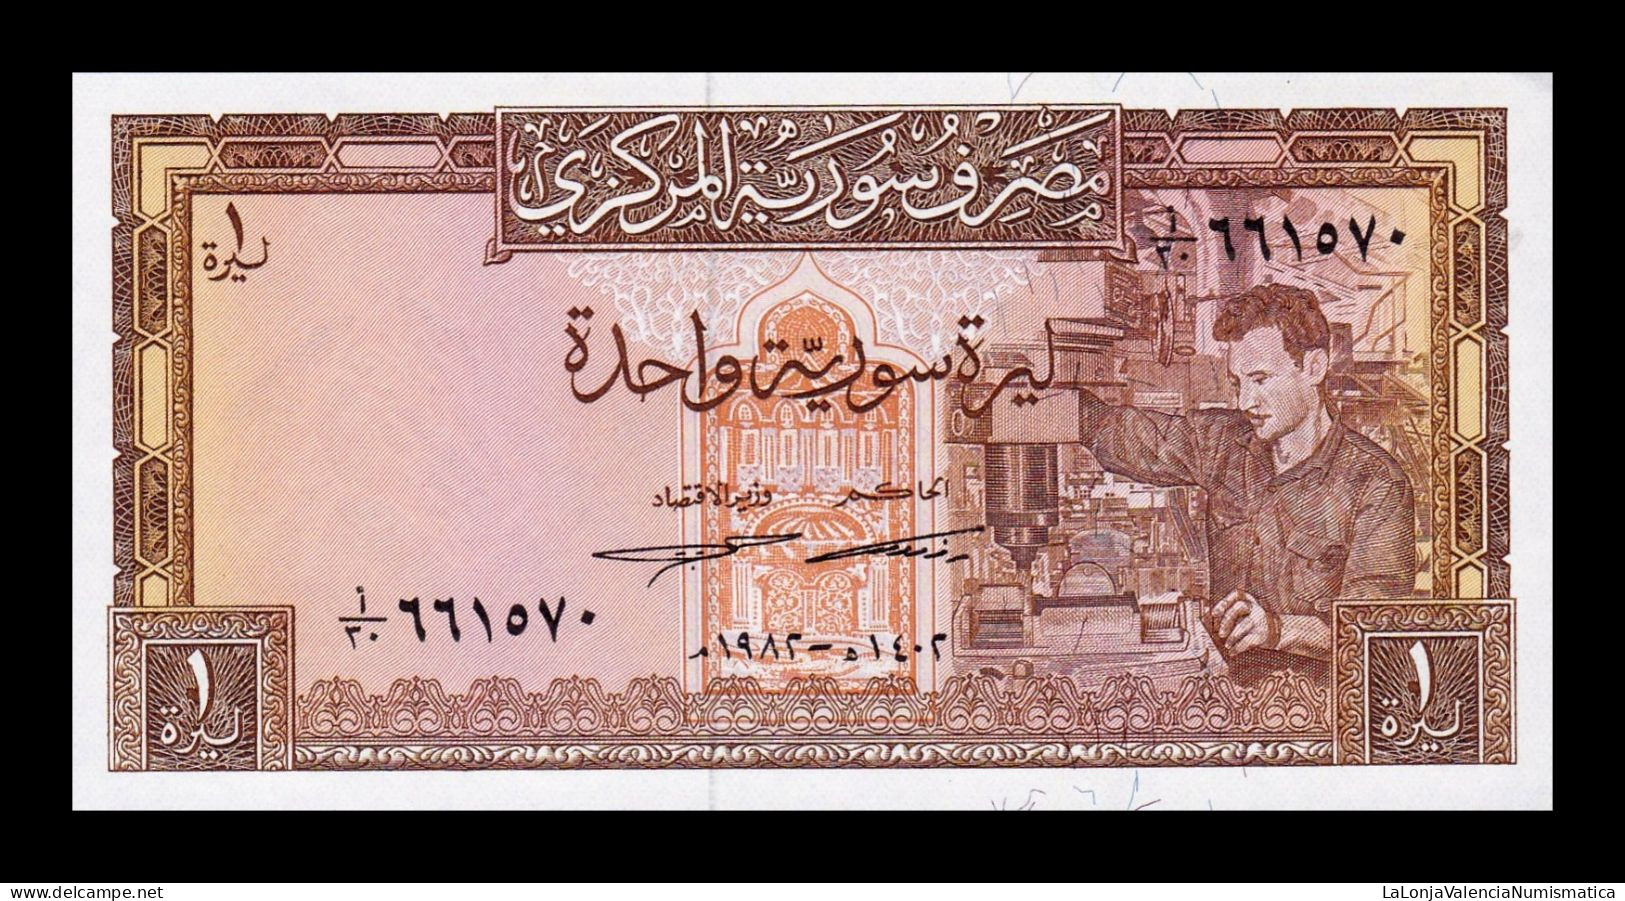 Siria Syria 1 Pound 1982 Pick 93e Sc Unc - Syria